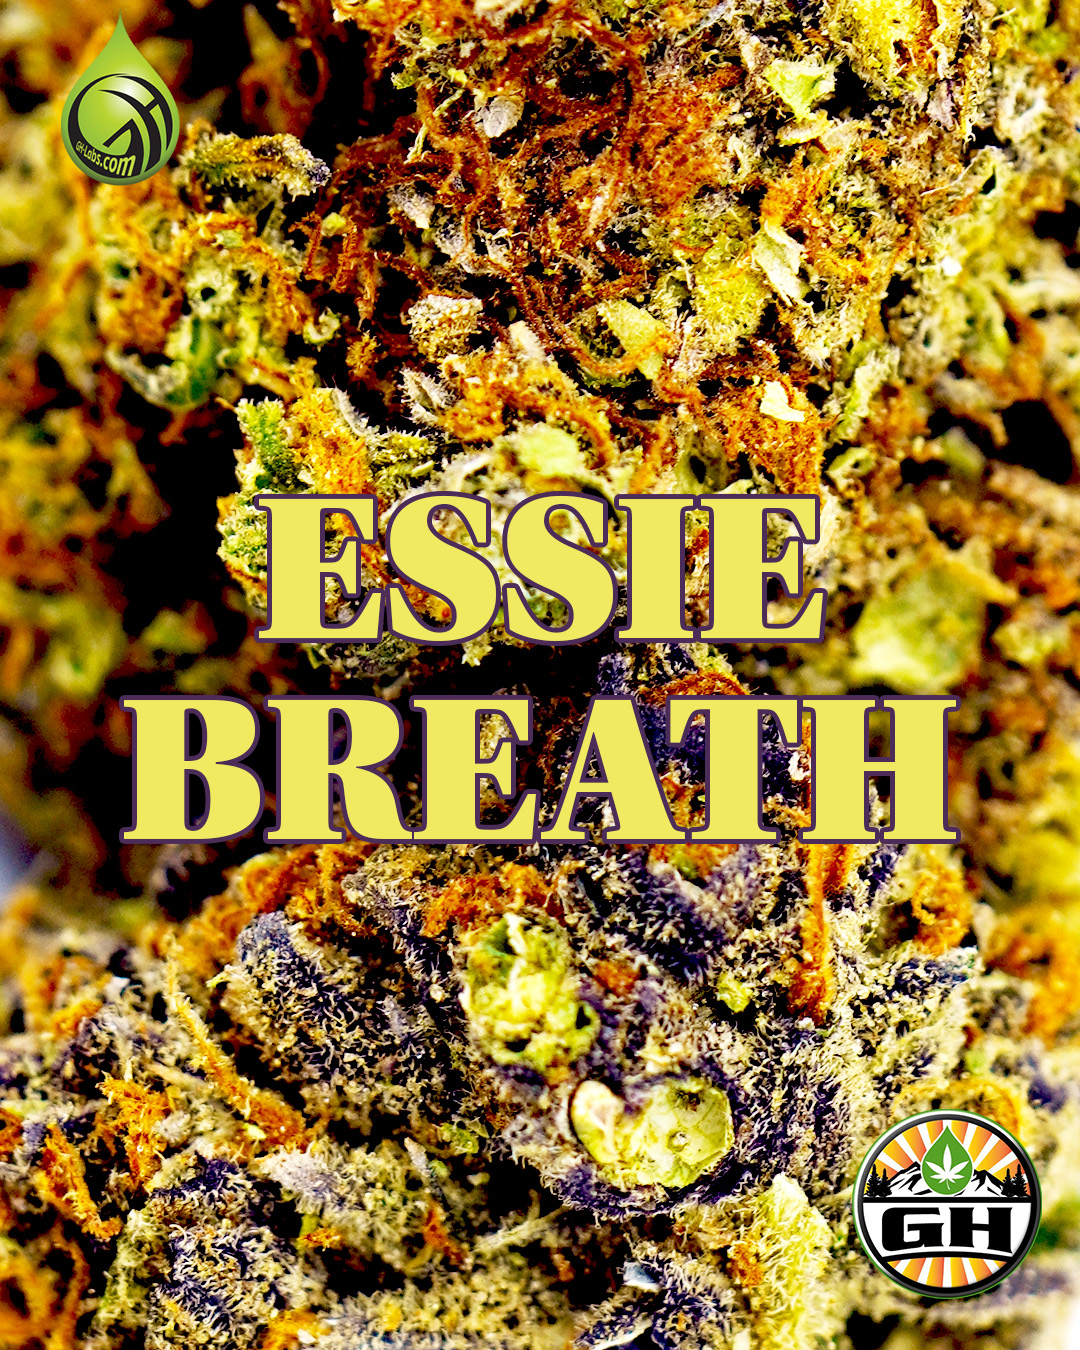 Introducing Essie Breath Indica